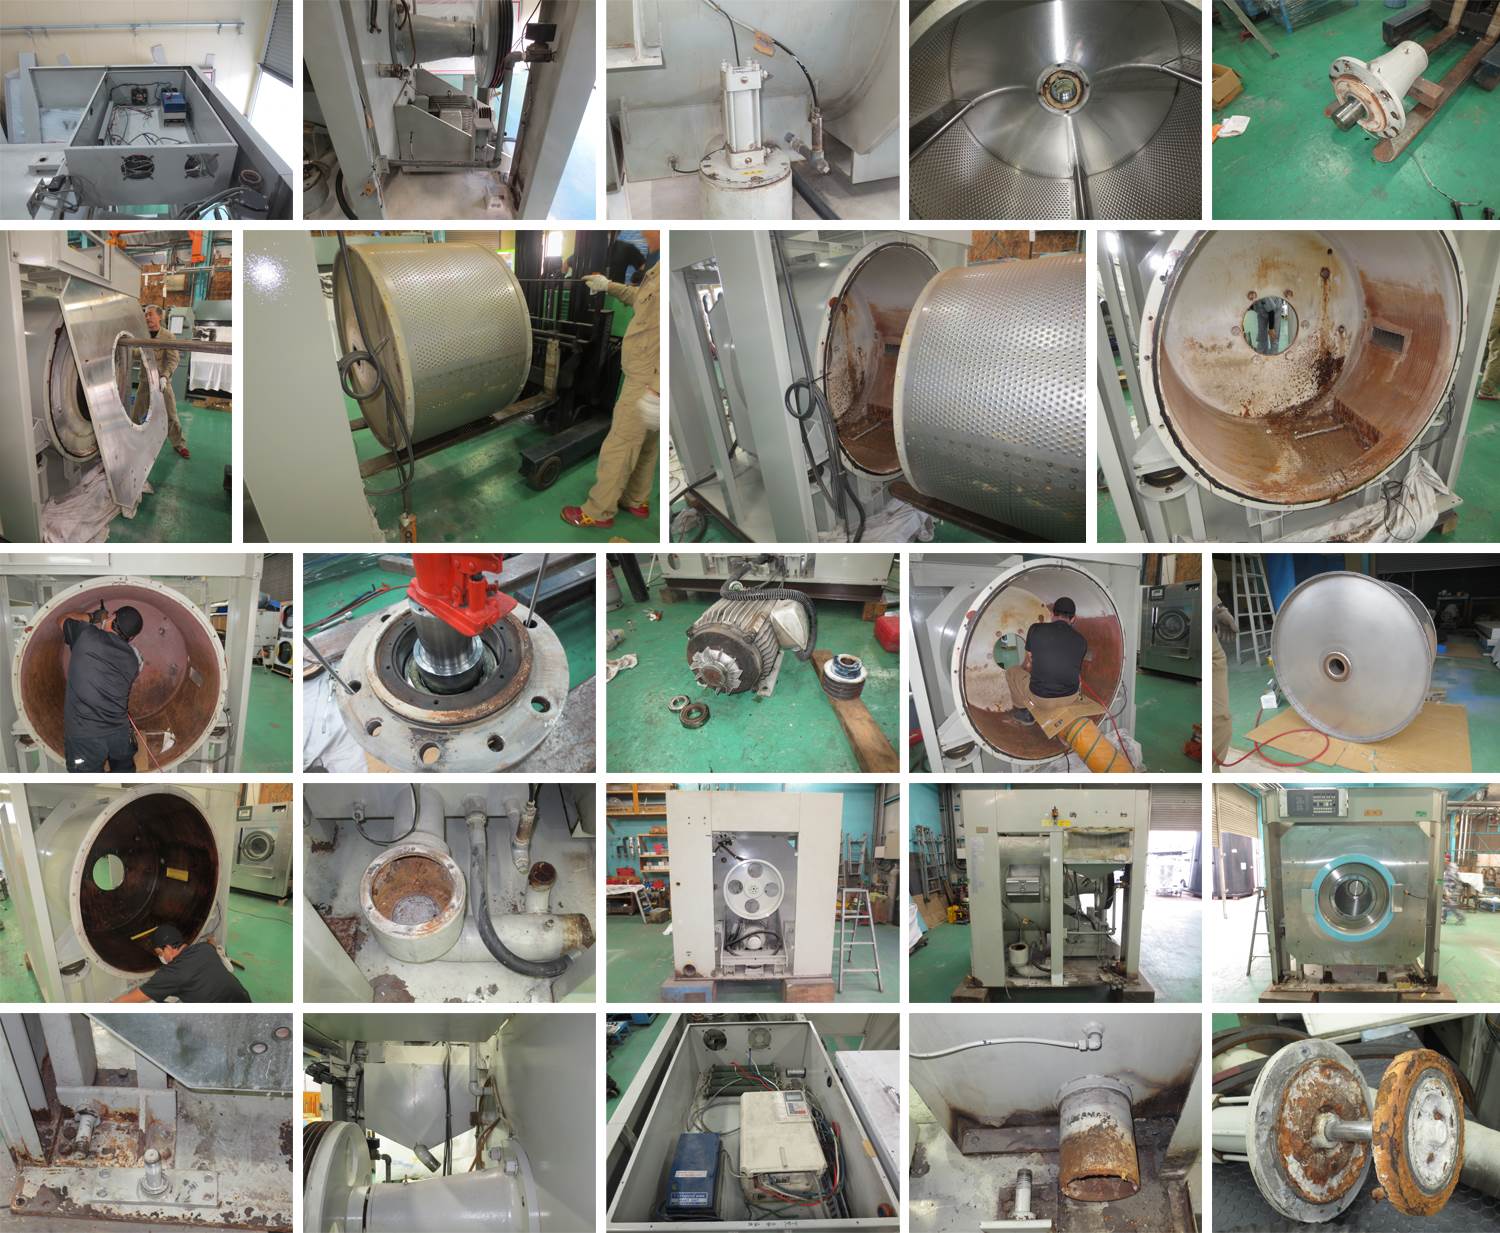 アサヒ製作所 水洗機 Wer4 50vk 株式会社ヤブサメ 業務用洗濯機 乾燥機の販売 プラント事業 中古クリーニング機械の再生